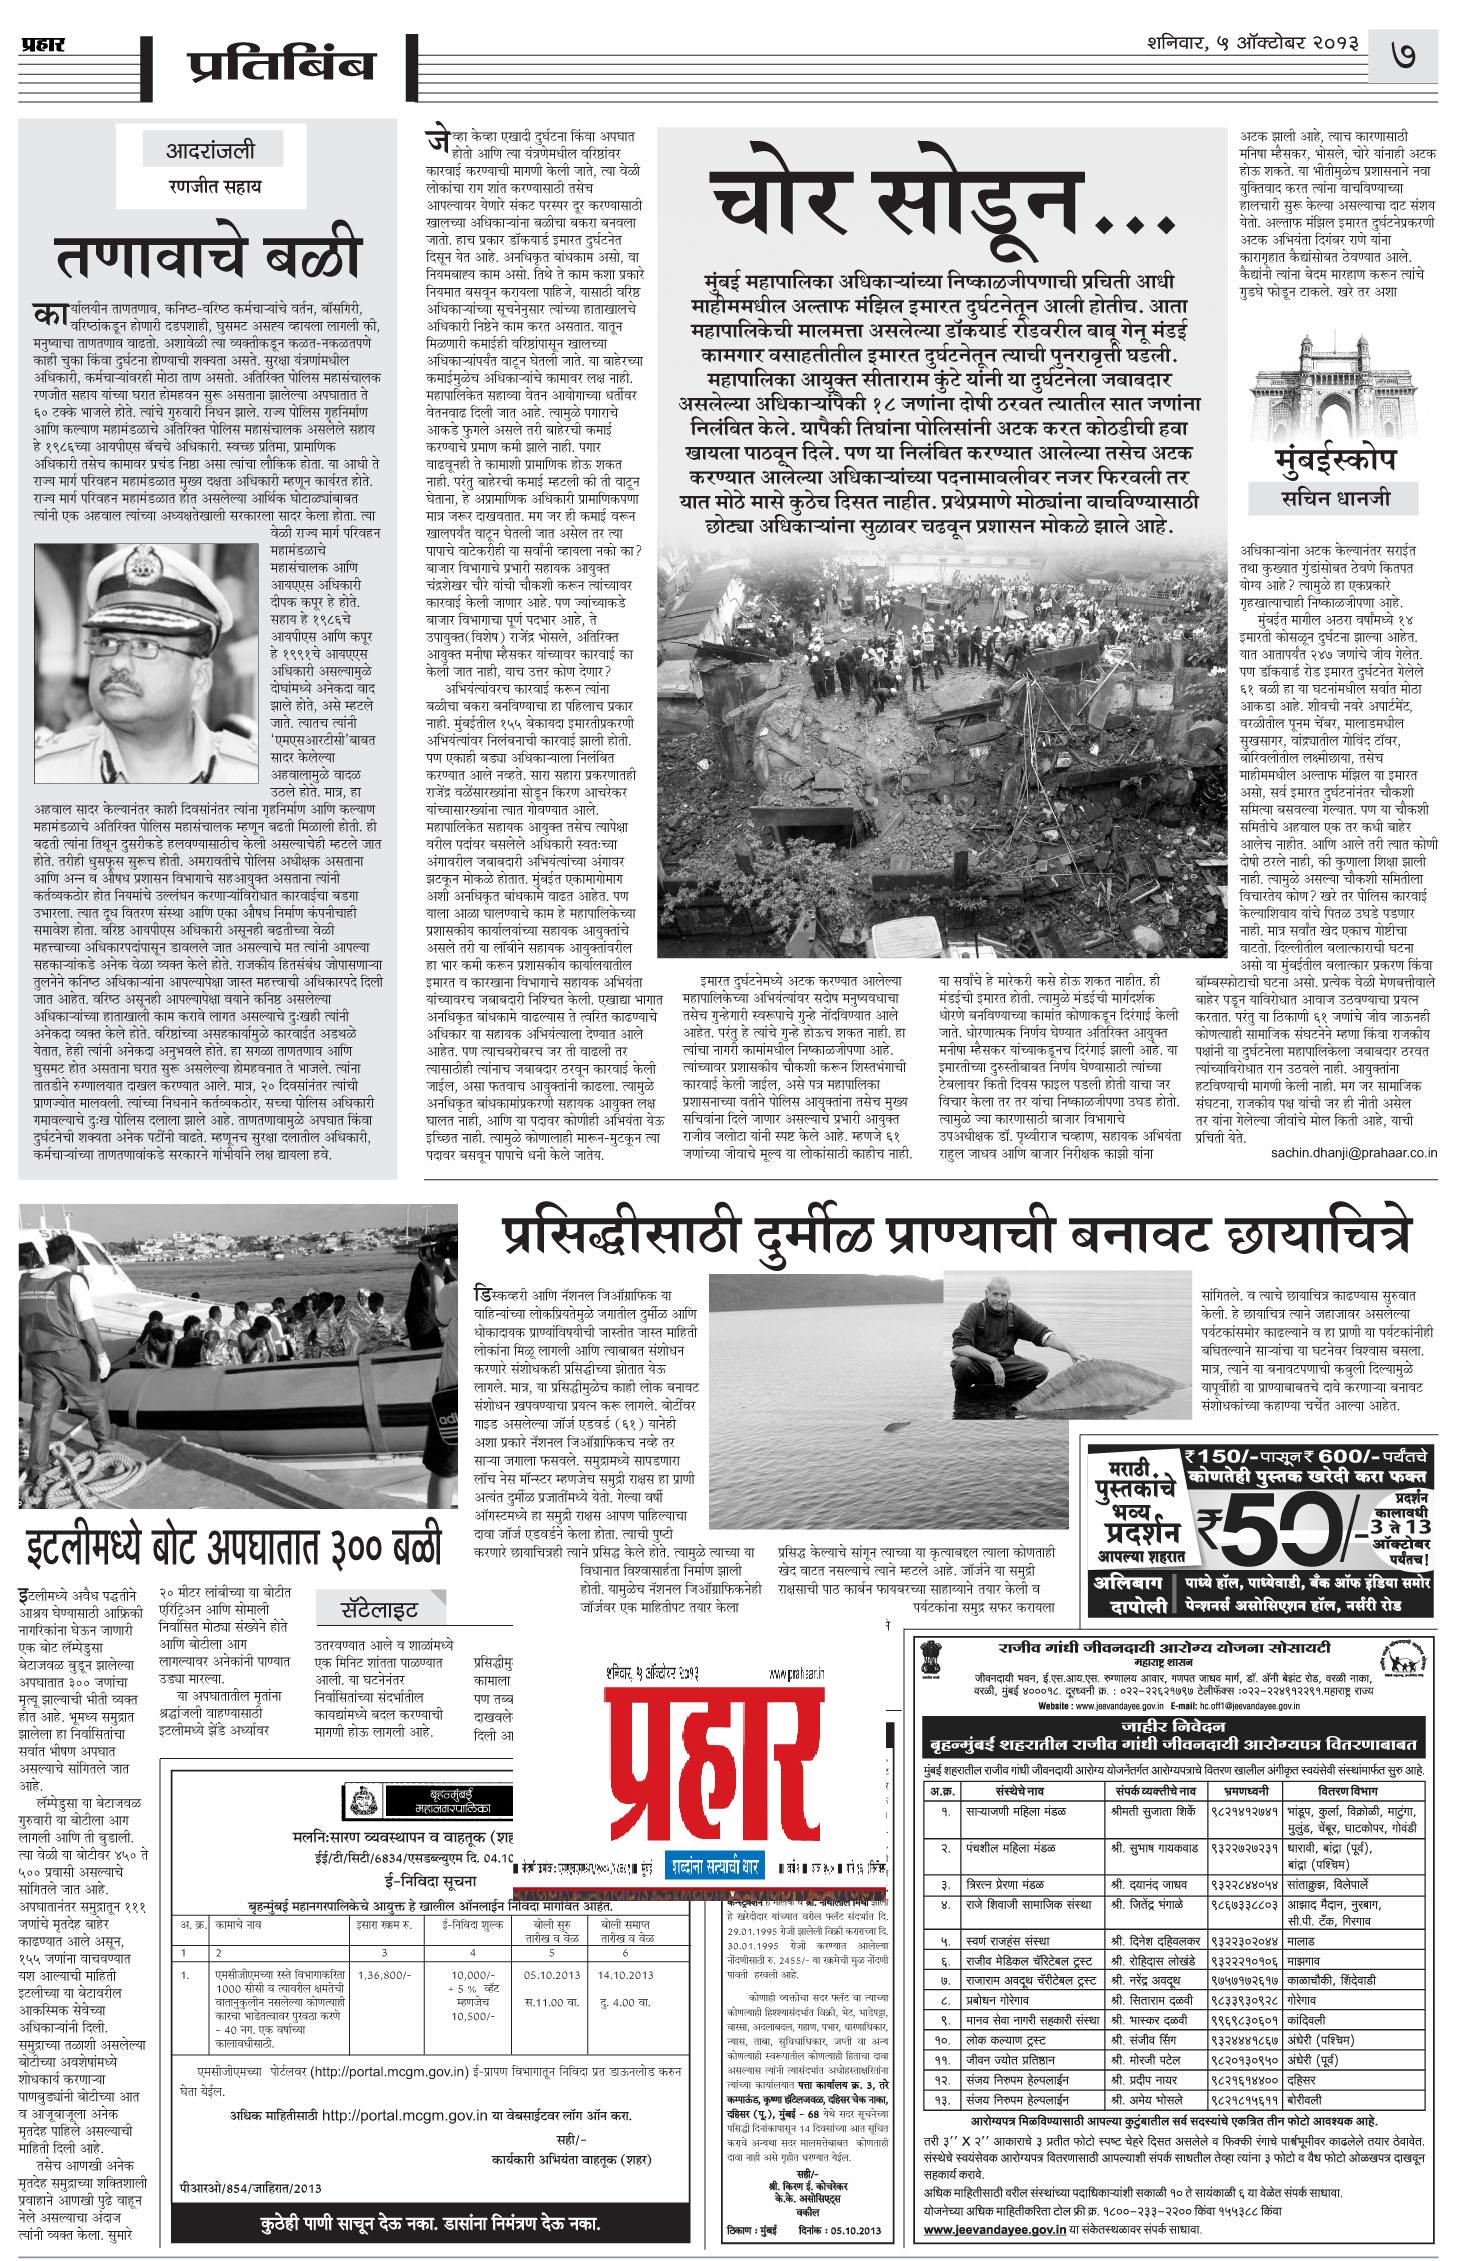 News - DONE media n news prahar 003